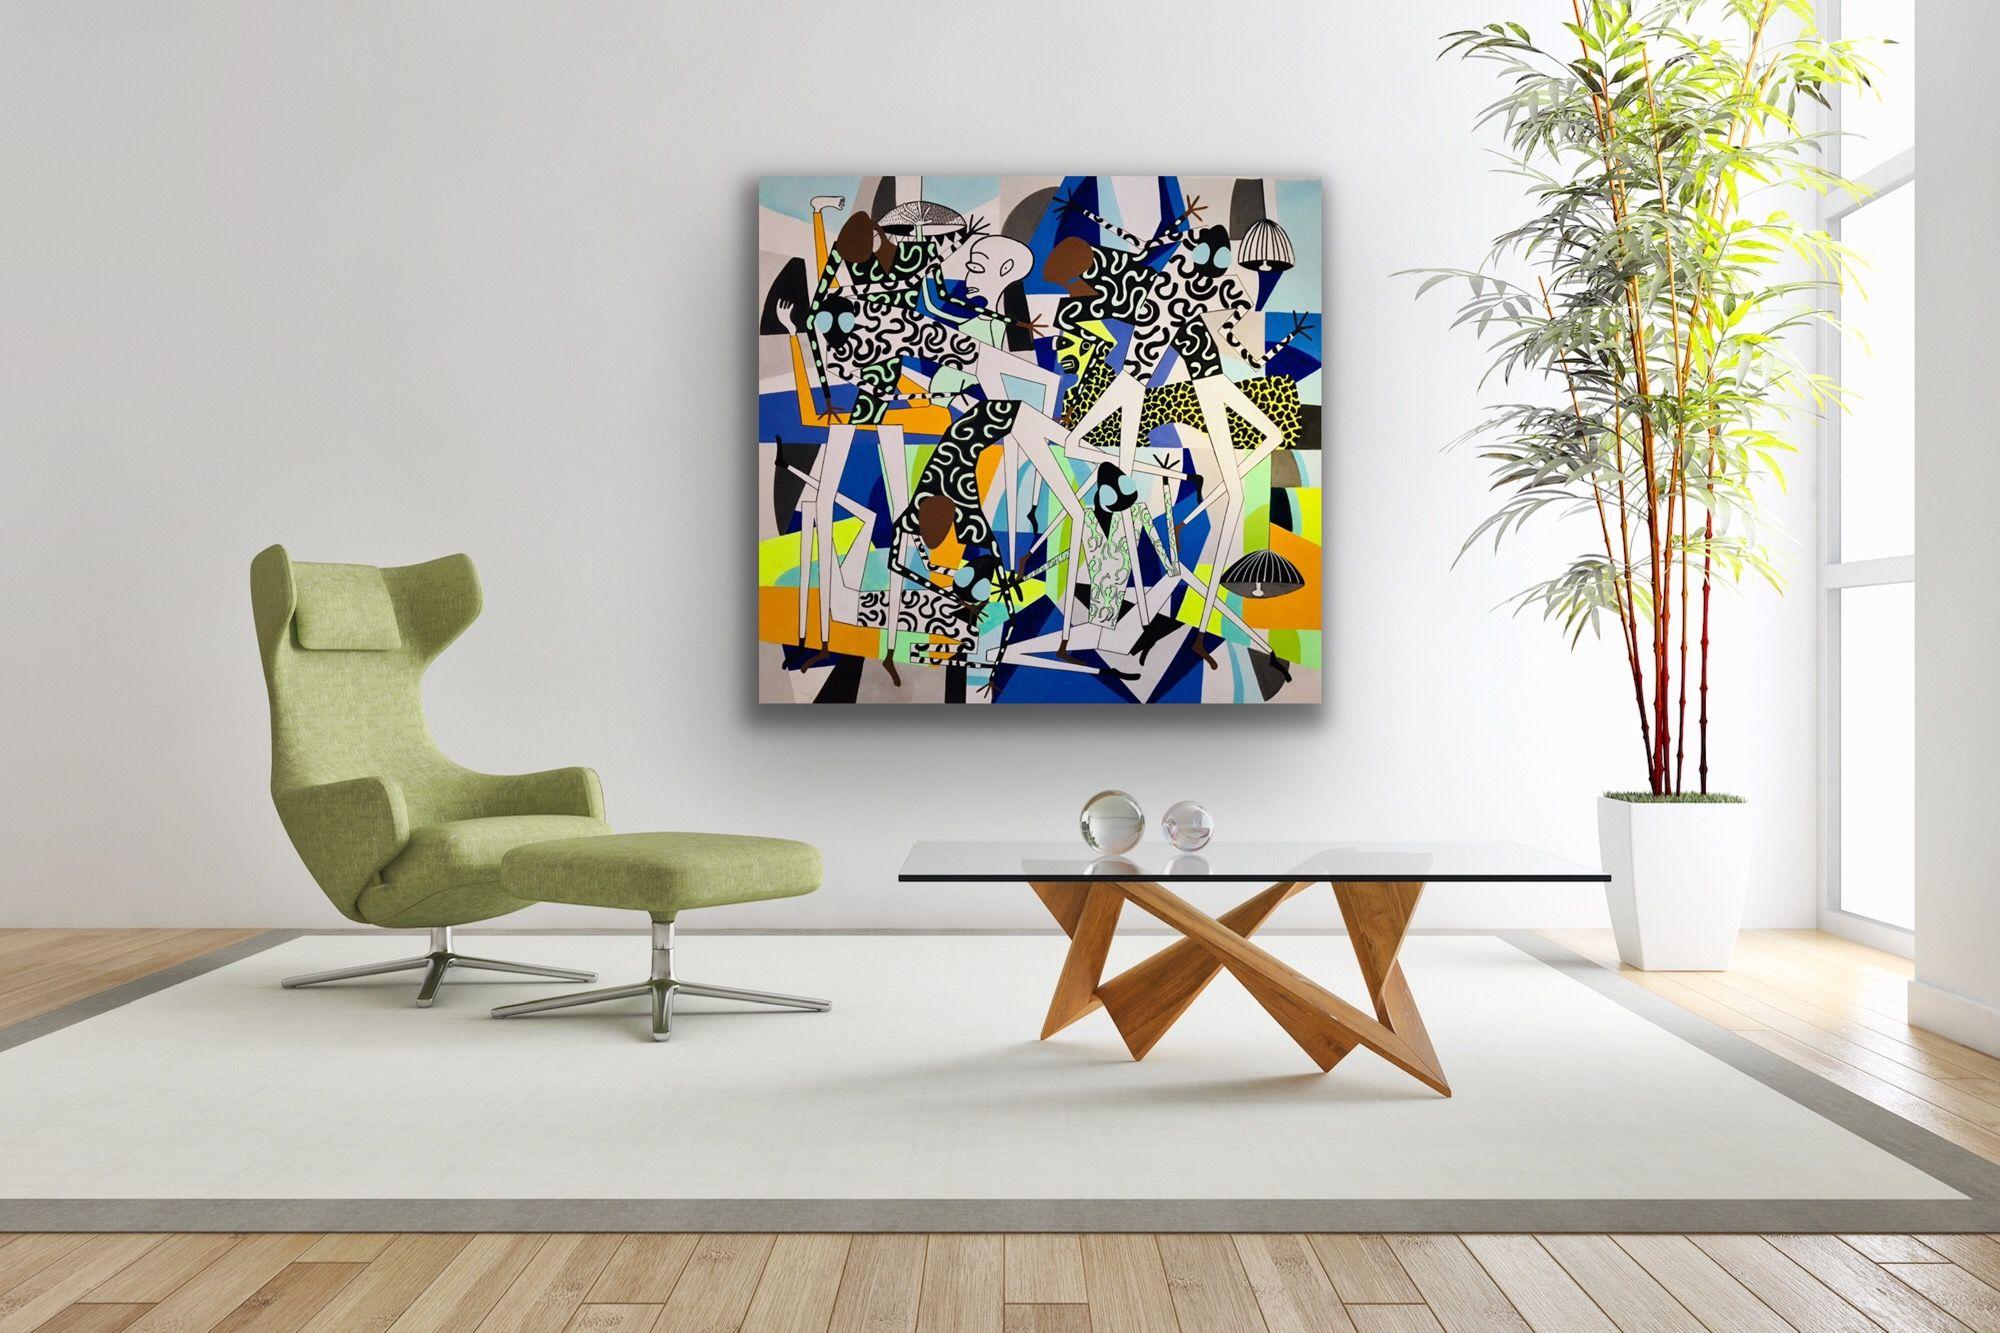 acrylmalerei auf der Leinwand, inspiriert durch afrikanische Kunst, zeitgenössische Kunstrichtungen. Das Kunstwerk zeigt 7 afrikanische Figuren, die auf einem kubistischen Hintergrund tanzen. Der Schaffensprozess wird von neuer Musik und der